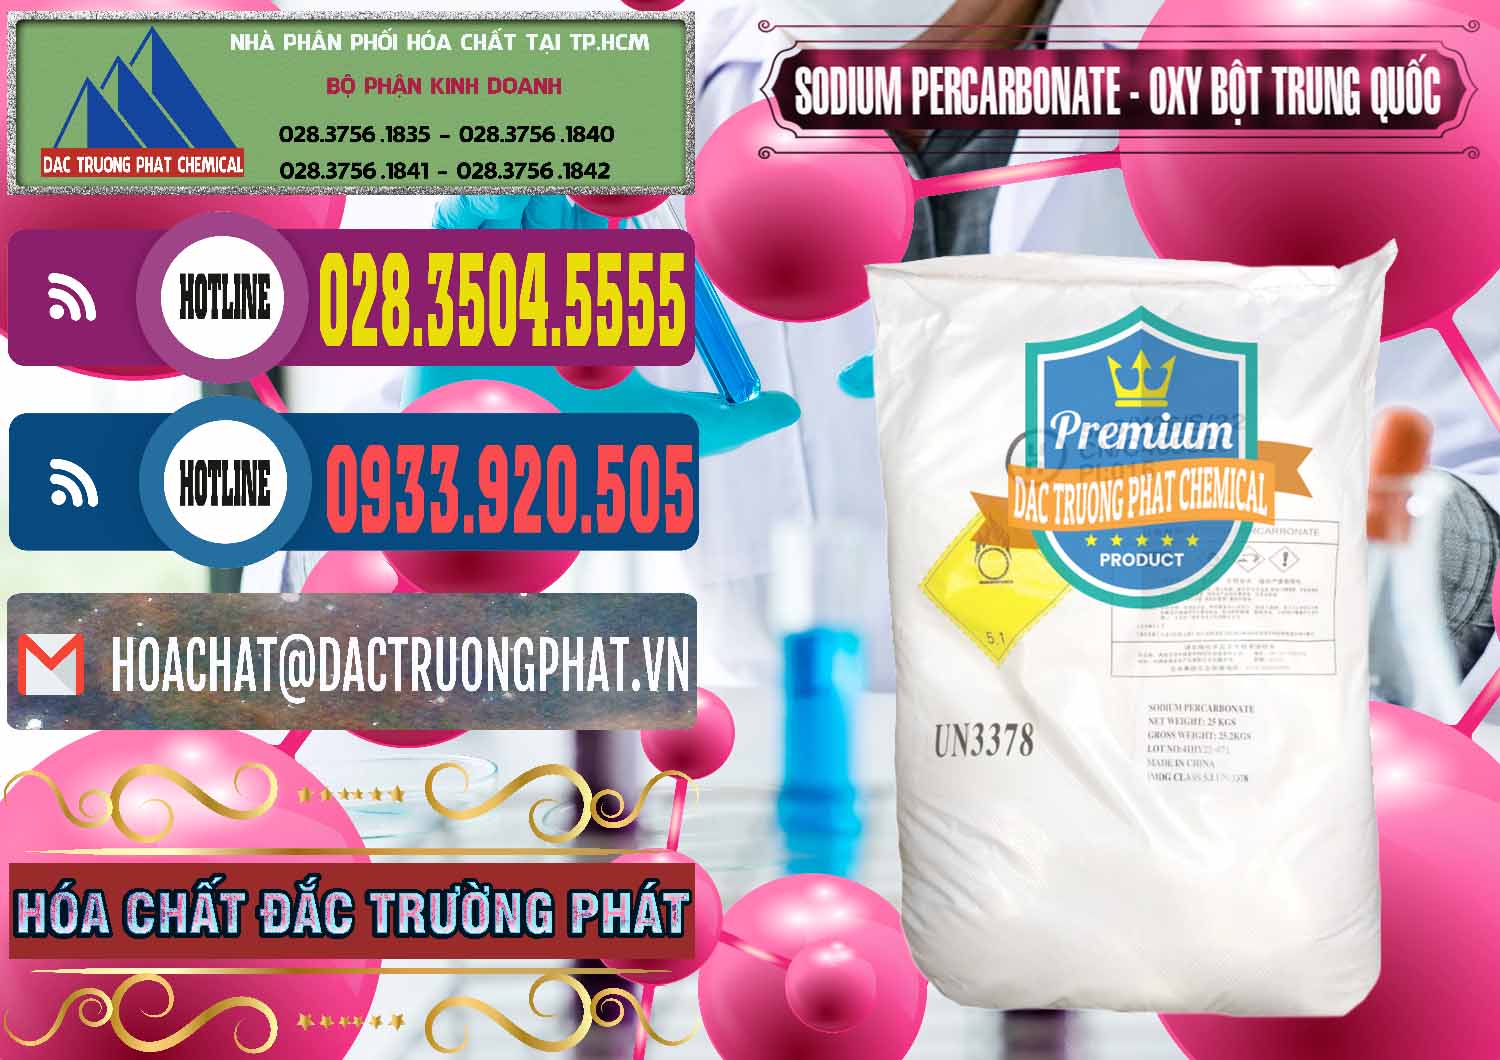 Nơi phân phối - bán Sodium Percarbonate Dạng Bột Trung Quốc China - 0390 - Chuyên phân phối ( cung cấp ) hóa chất tại TP.HCM - muabanhoachat.com.vn